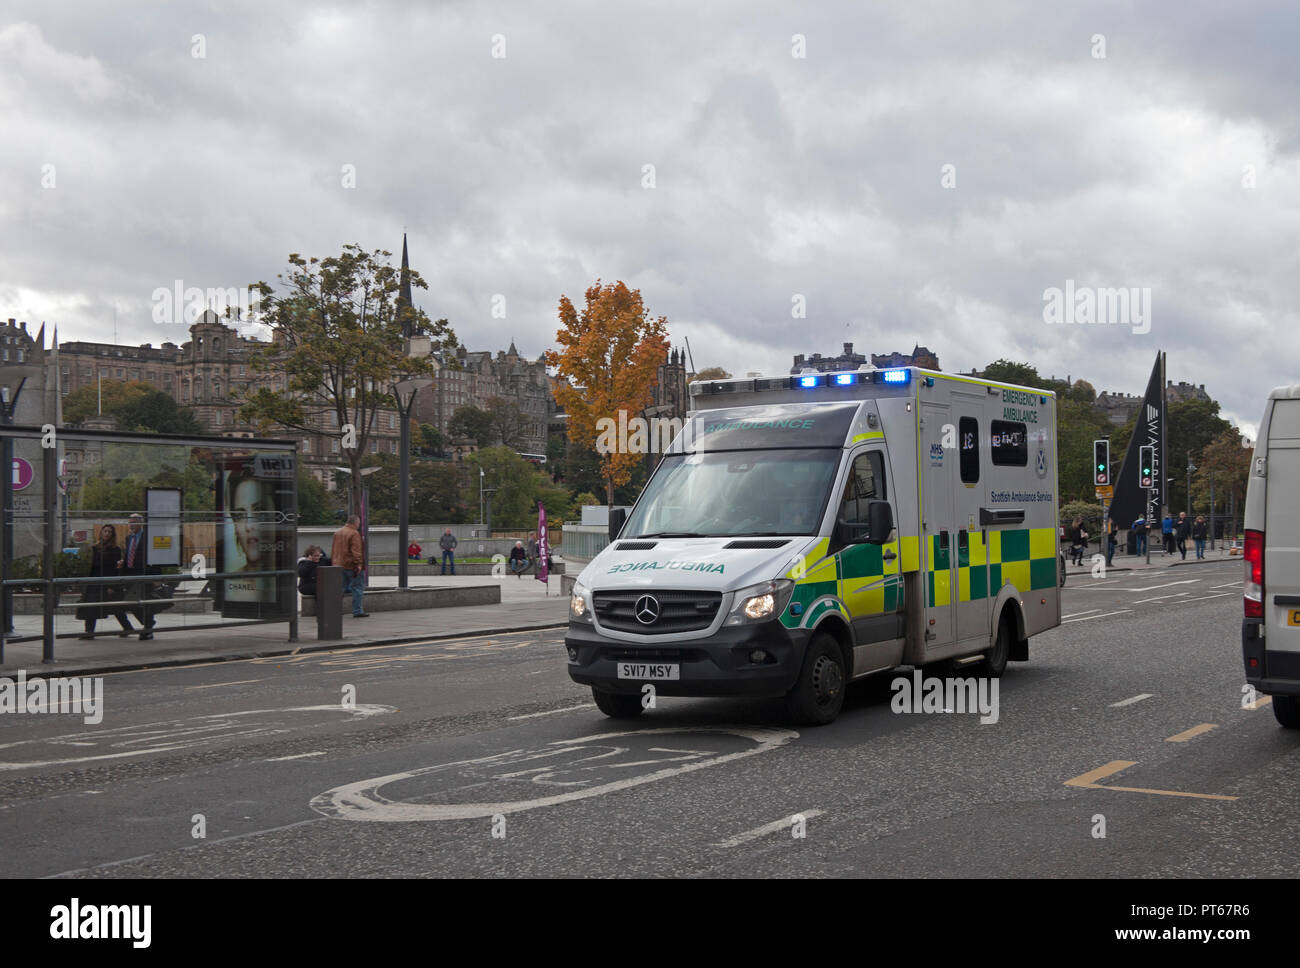 Krankenwagen mit Blaulicht Schnellfahren in 20 Zone auf Notfallmaßnahmen, Princes Street, Edinburgh, Schottland, Großbritannien Stockfoto